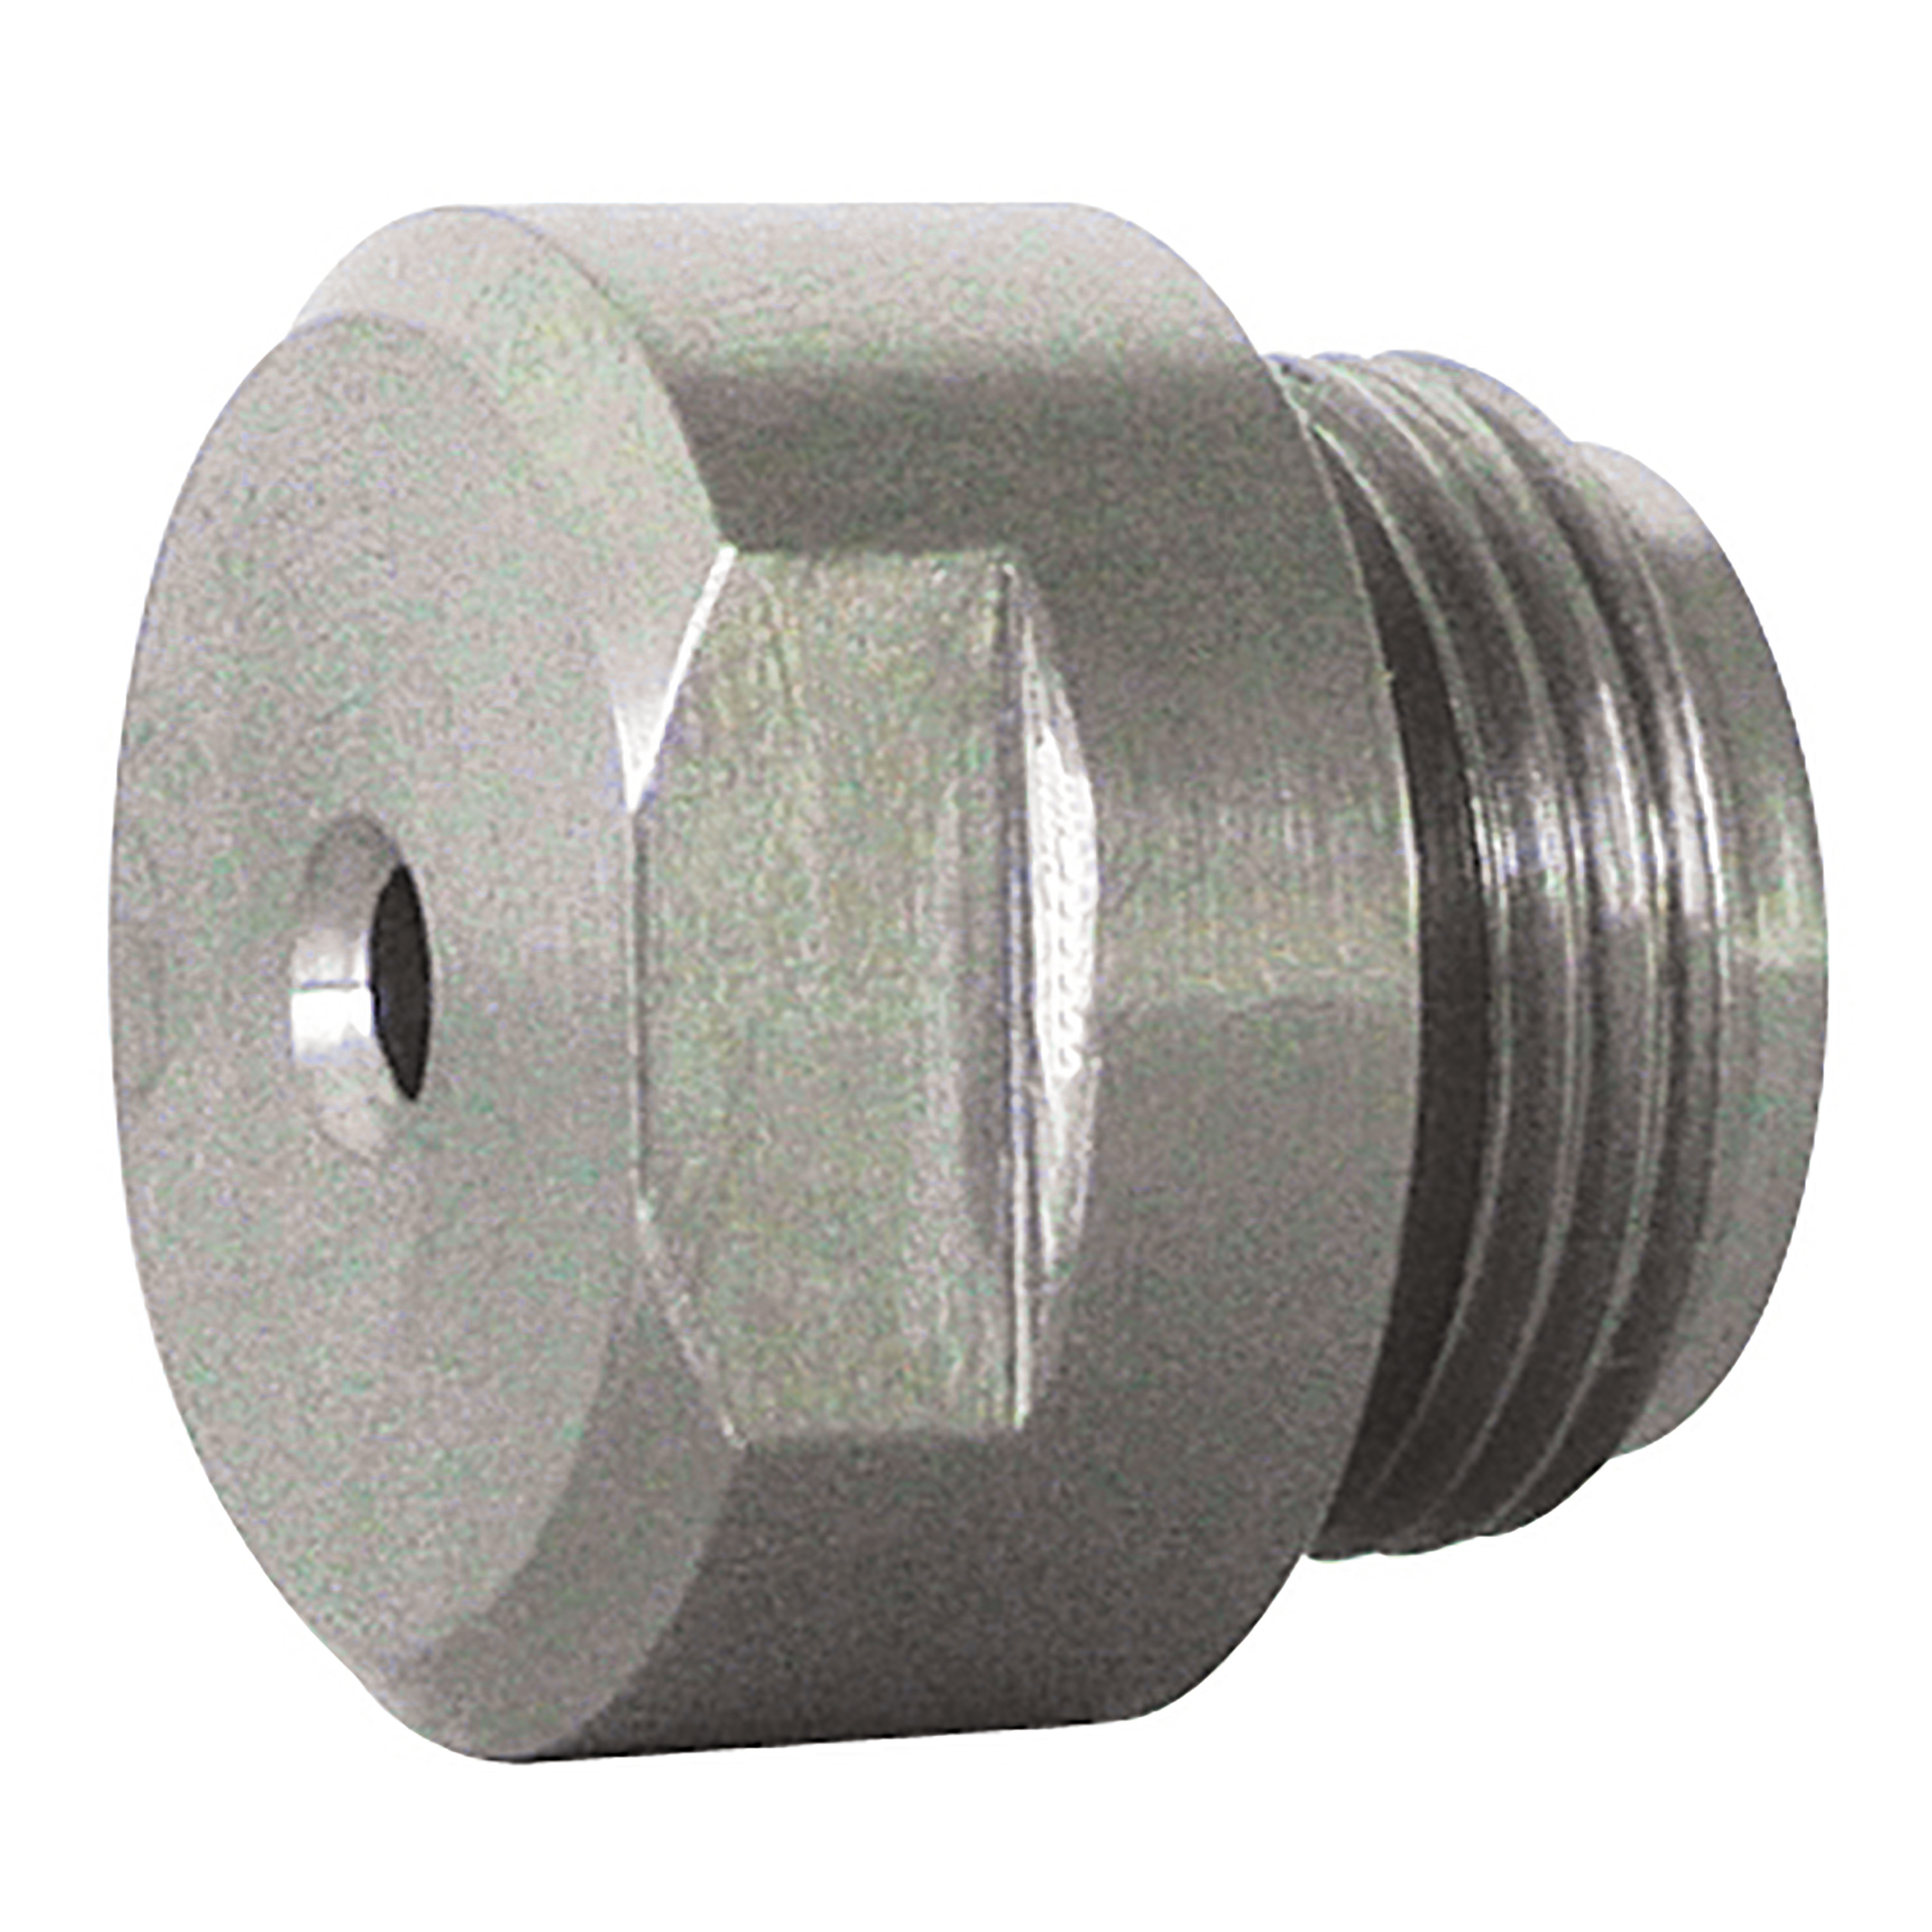 Spritzdüse, Ø4 mm, M 21 × 1,5, O-Ring, passend für 416, weitere Düsen-Ø, bis max. 6 mm, sind auf Anfrage erhältlich.